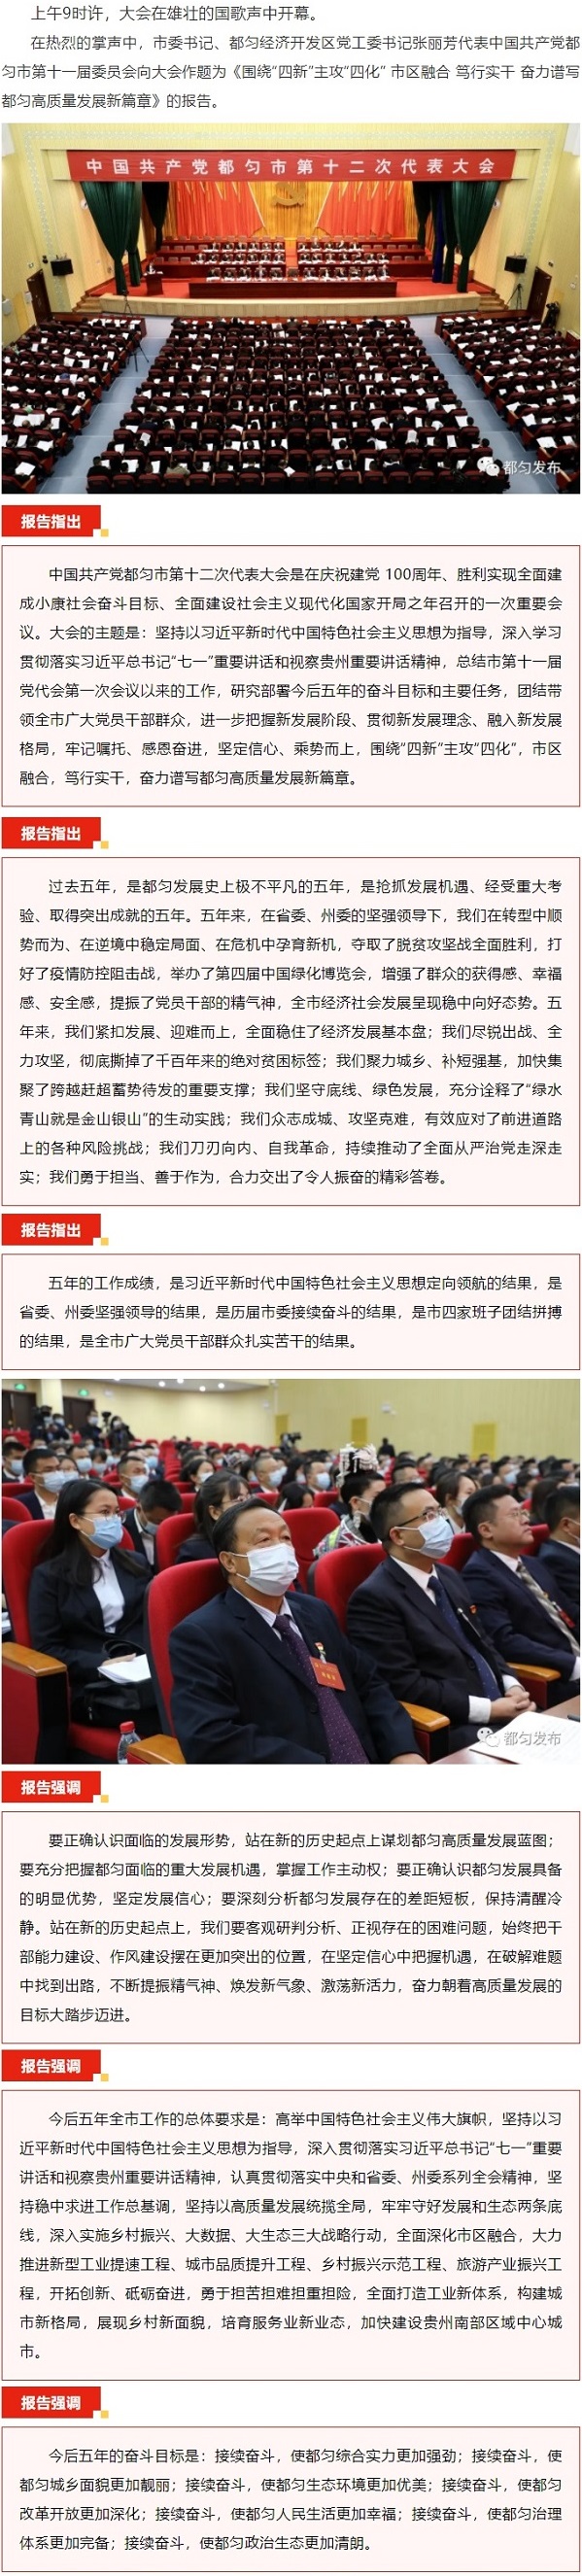 20211025-中国共产党都匀市第十二次代表大会开幕02.jpg